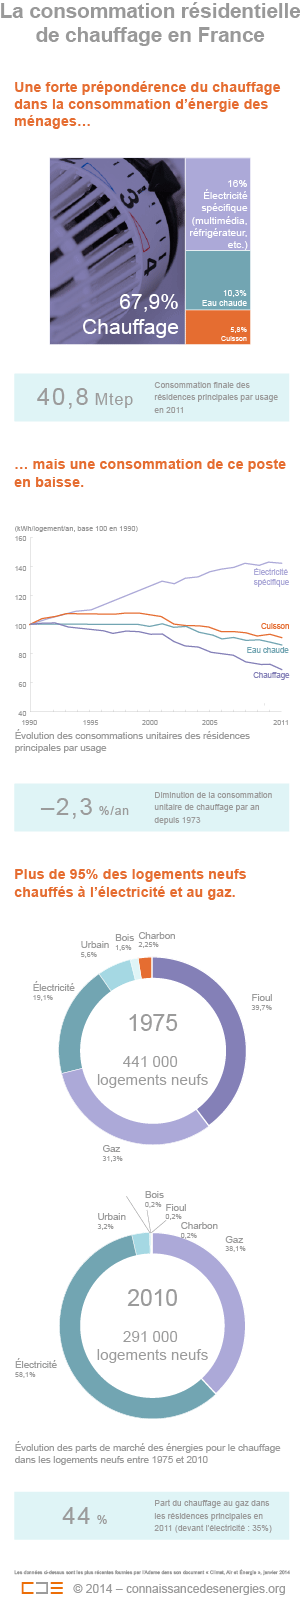 Les ménages français dépensent en moyenne 1087 euros par an pour se chauffer selon un sondage de l'Ifop réalisé en octobre 2013. ﻿(©Connaissance des Énergies)